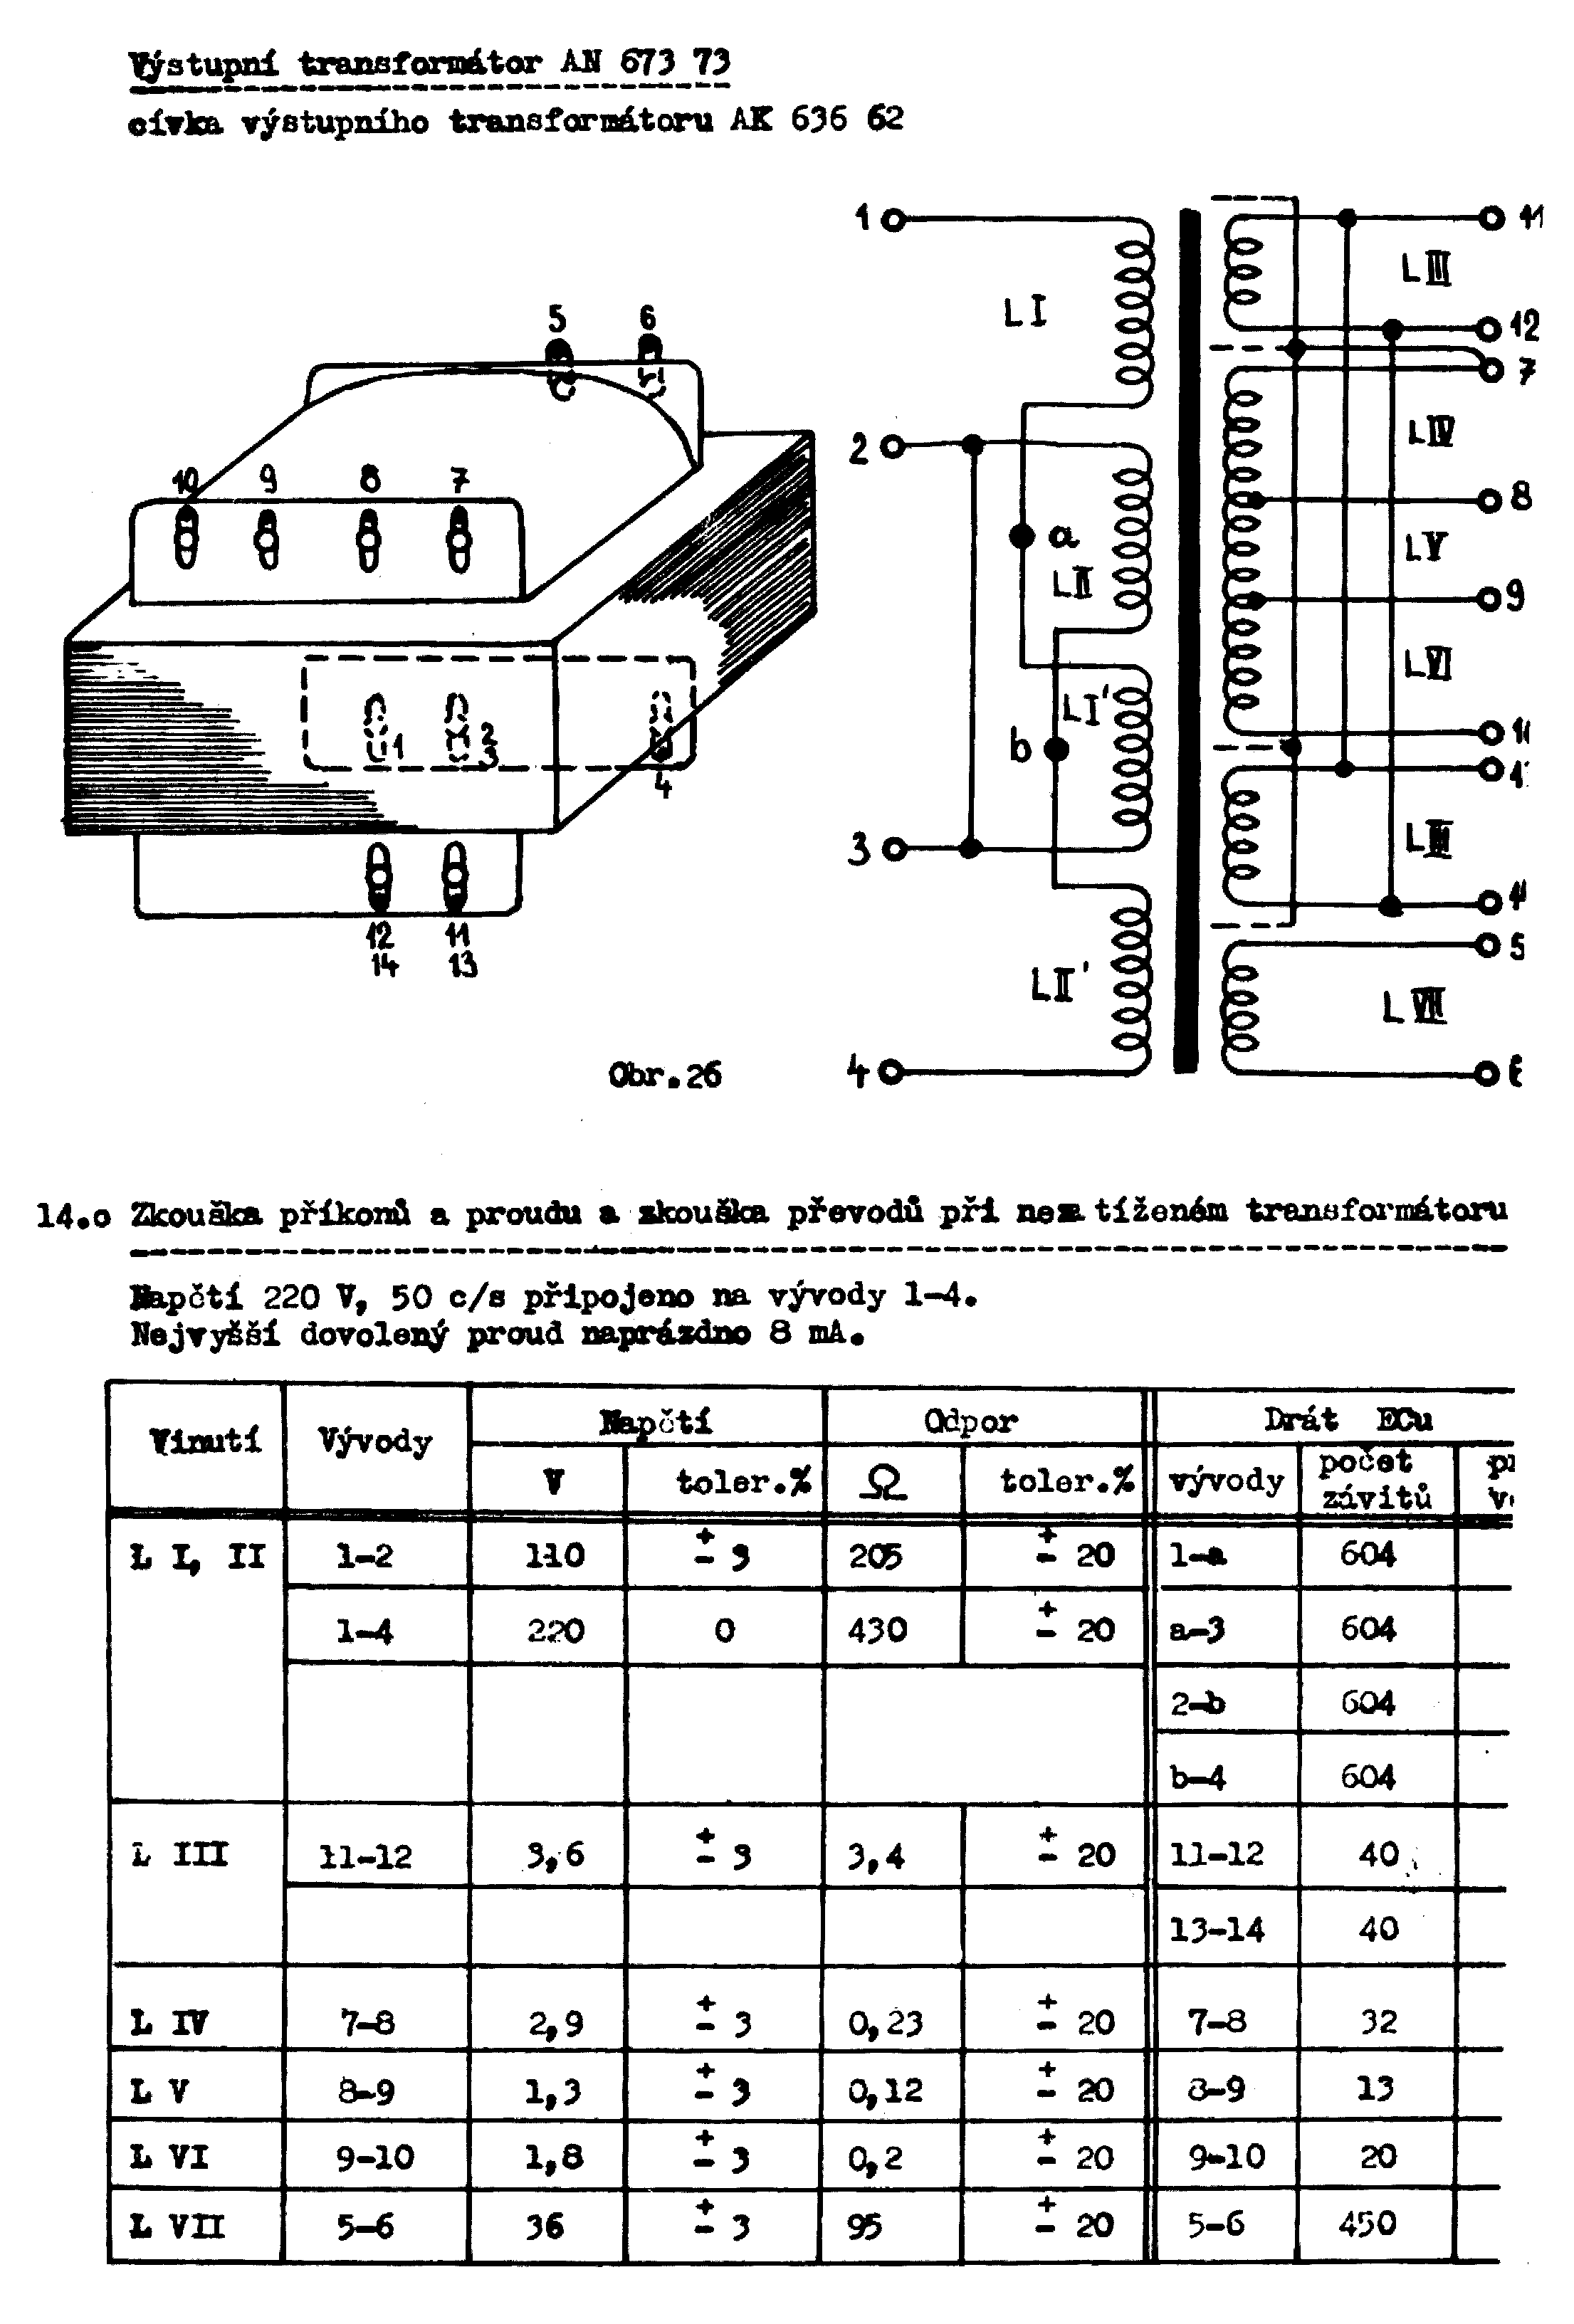 Navíjací predpis transformátora an67373 (kliknutím sa zobrazí v plnom rozlíšení)